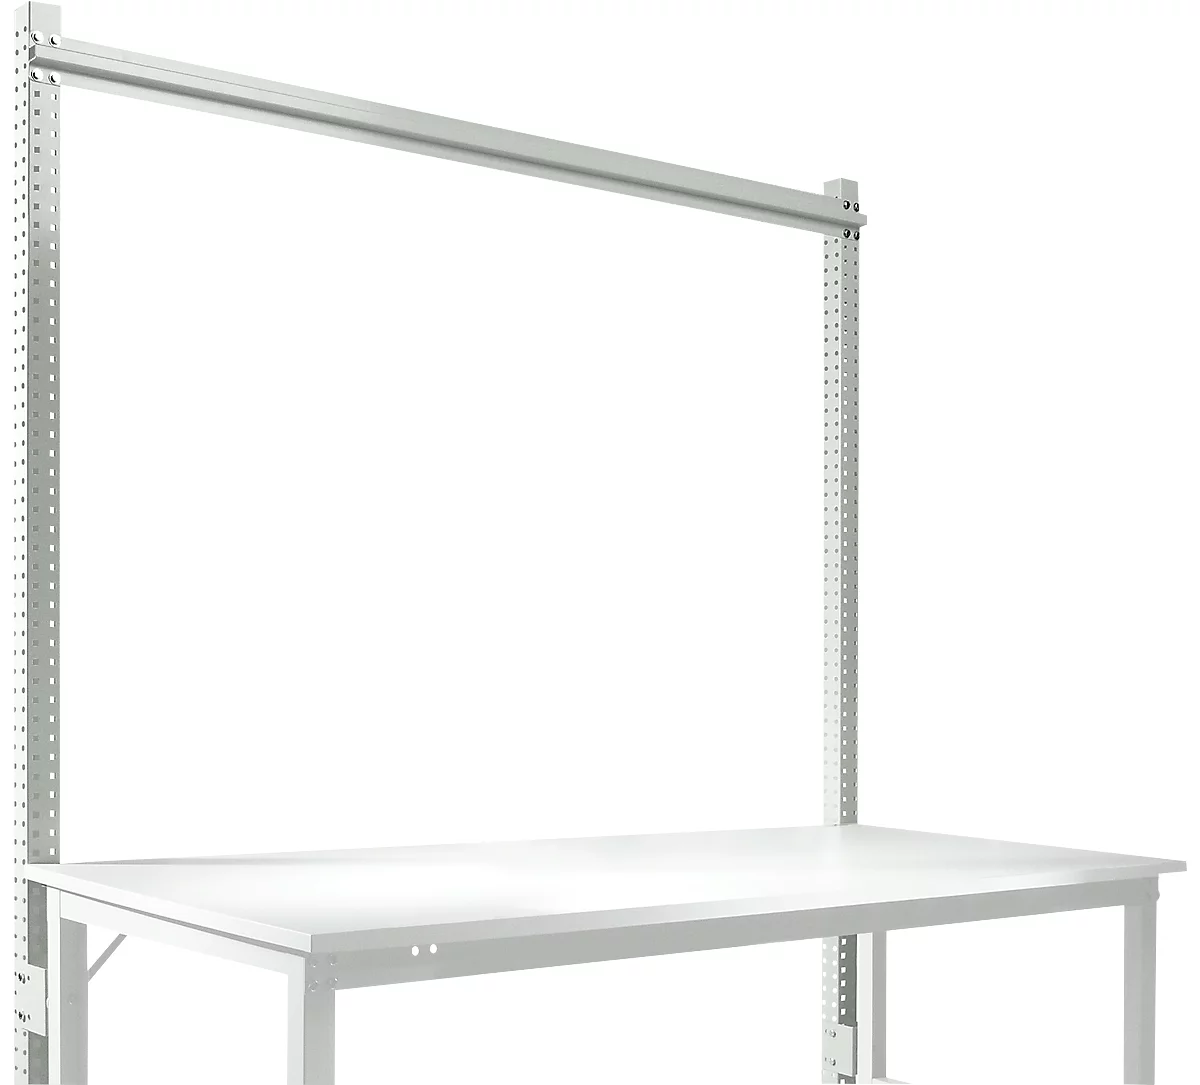 Estructura pórtica adicional, Mesa básica SPEZIAL sistema mesa de trabajo/banco de trabajo UNIVERSAL/PROFI, 1750 mm, gris luminoso